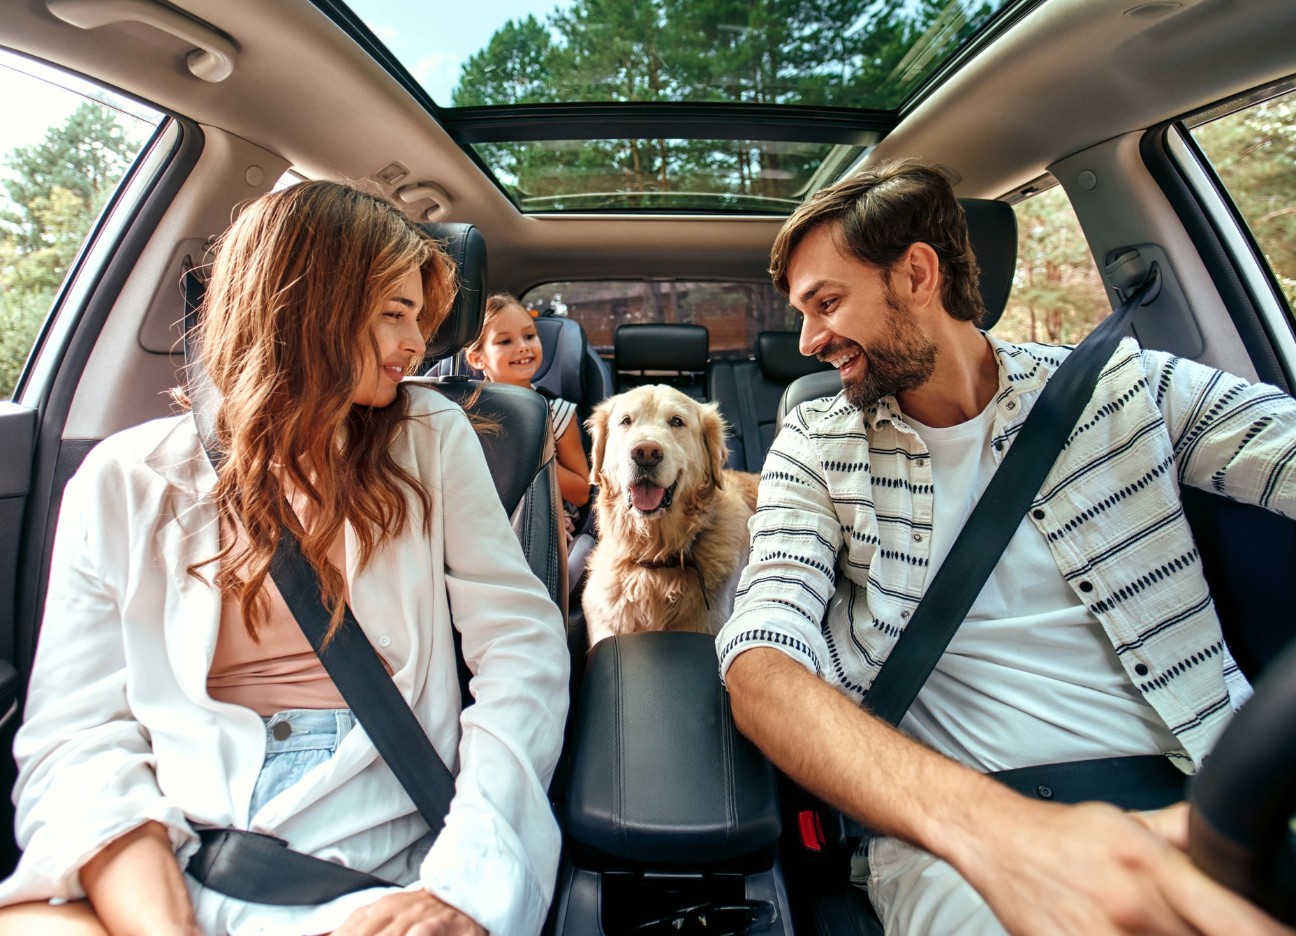 Eine junge Familie, fotografiert aus der Perspektive des Autocockpits, sitzt angeschnallt Auto und haben ihren goldbeigen Hund auf der Rückbank mit dabei.